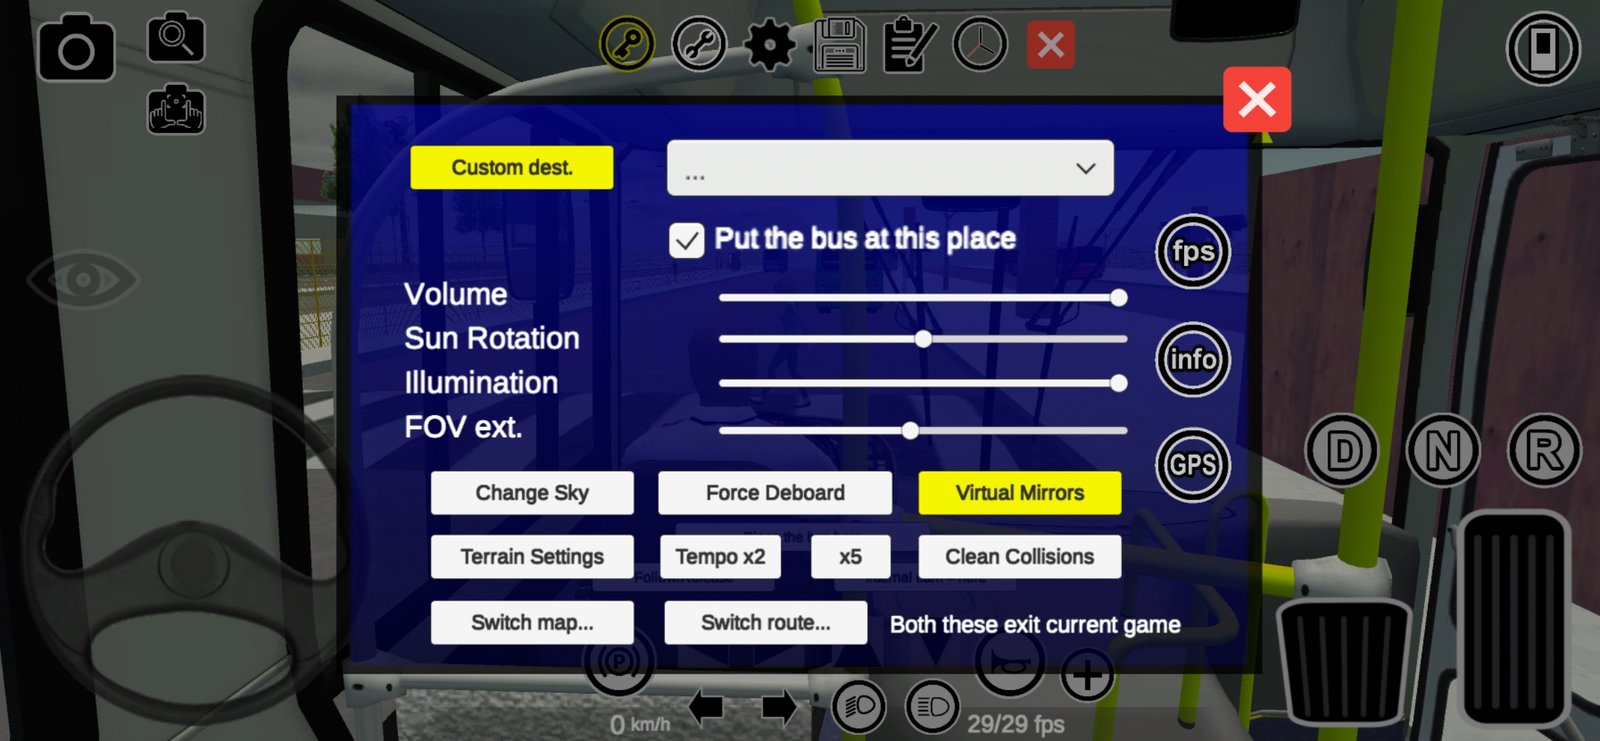 Old City Bus Public Passengers Transport  Proton Bus Simulator Urbano  Premium Android Gameplay 